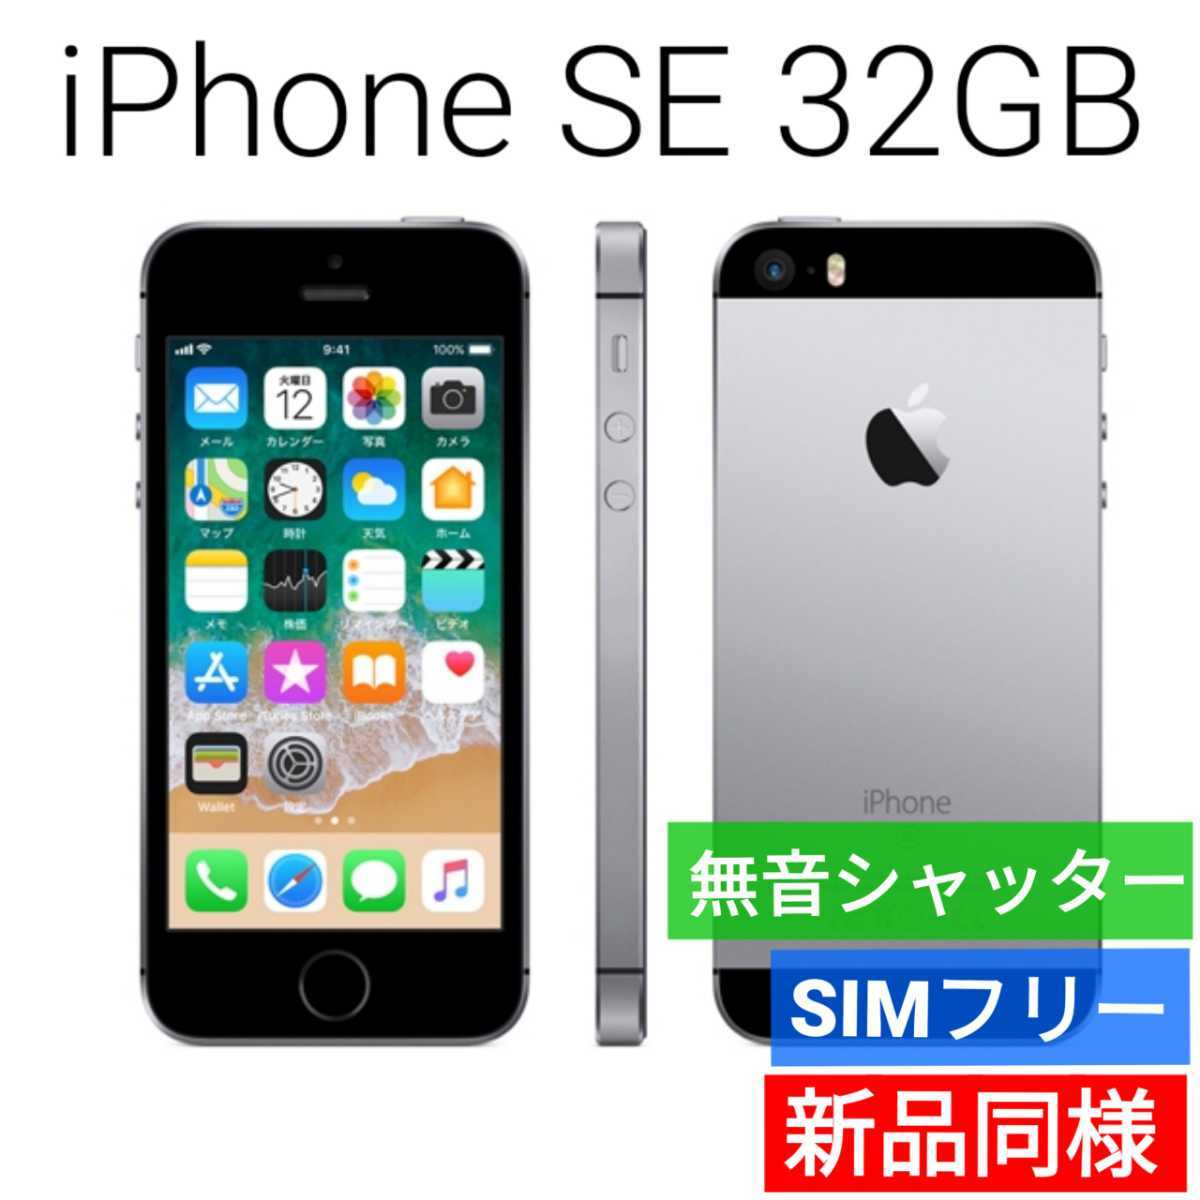 新品同等 iPhone SE A1723 32GB スペースグレー 海外版 SIMフリー シャッター音なし 送料無料 国内発送 IMEI 356129090576064